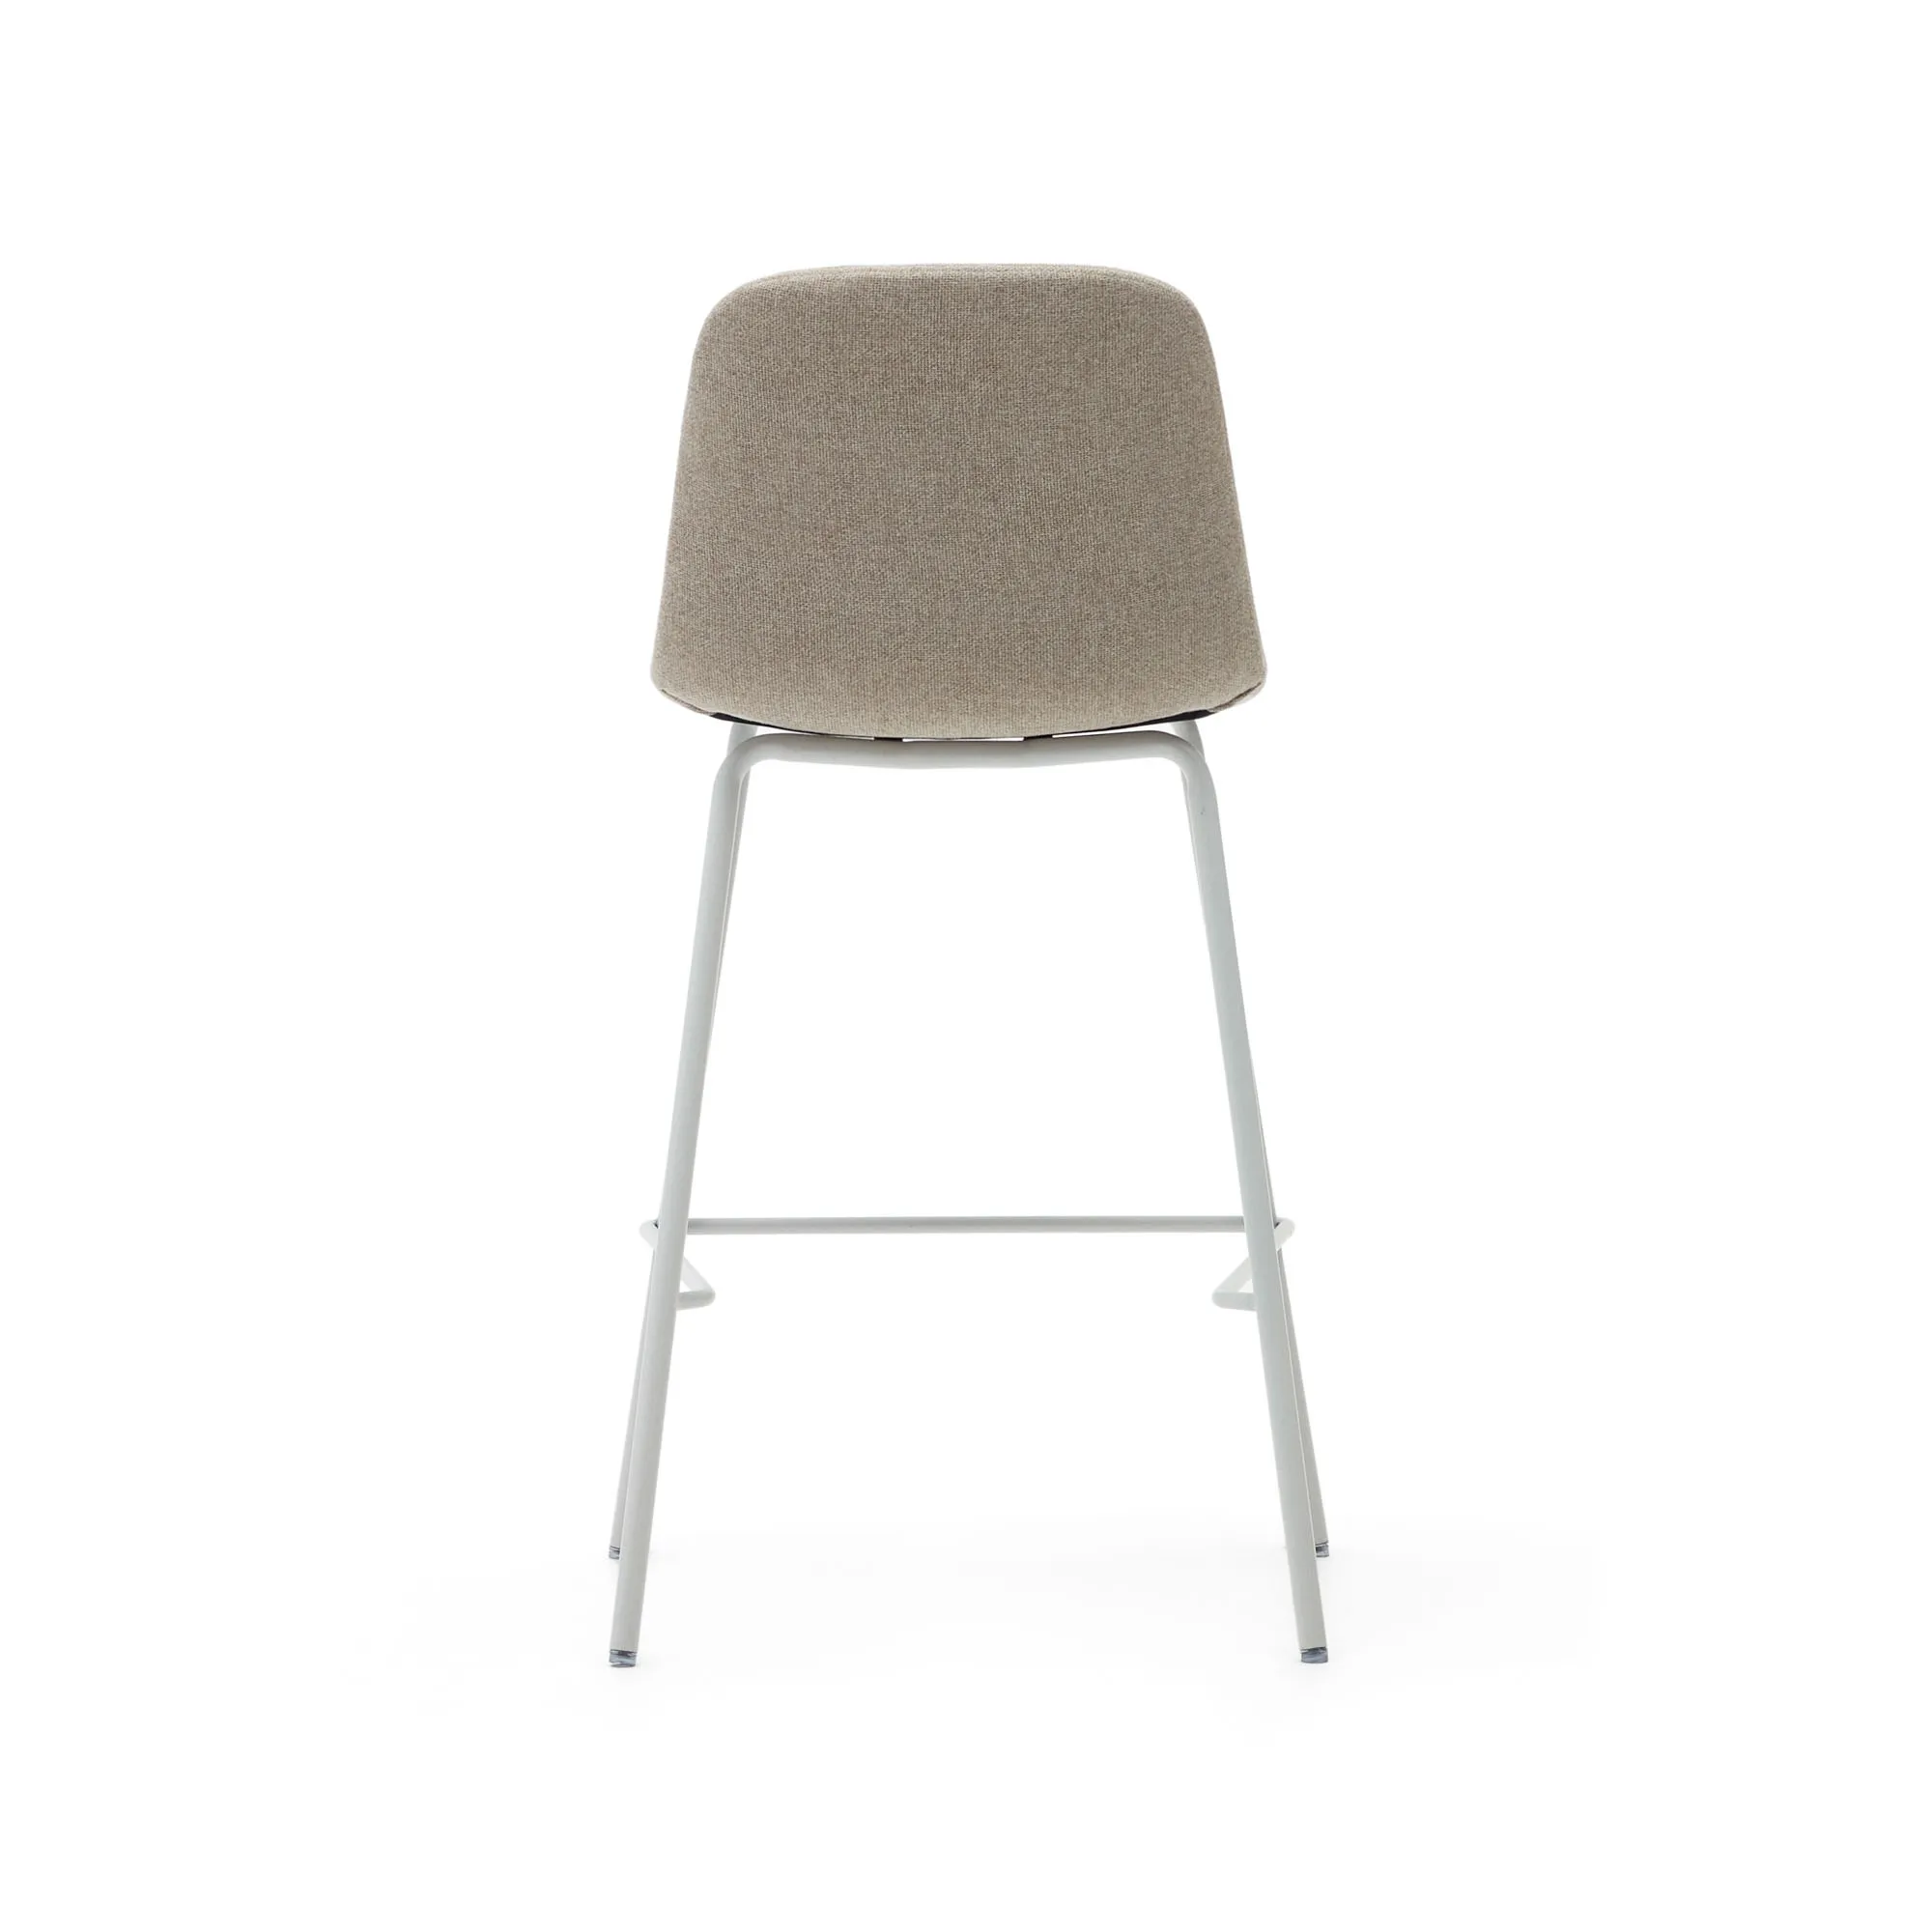 Полубарный стул La Forma Zunilda бежевый шенилл и сталь с матовой белой отделкой 65 см 166659